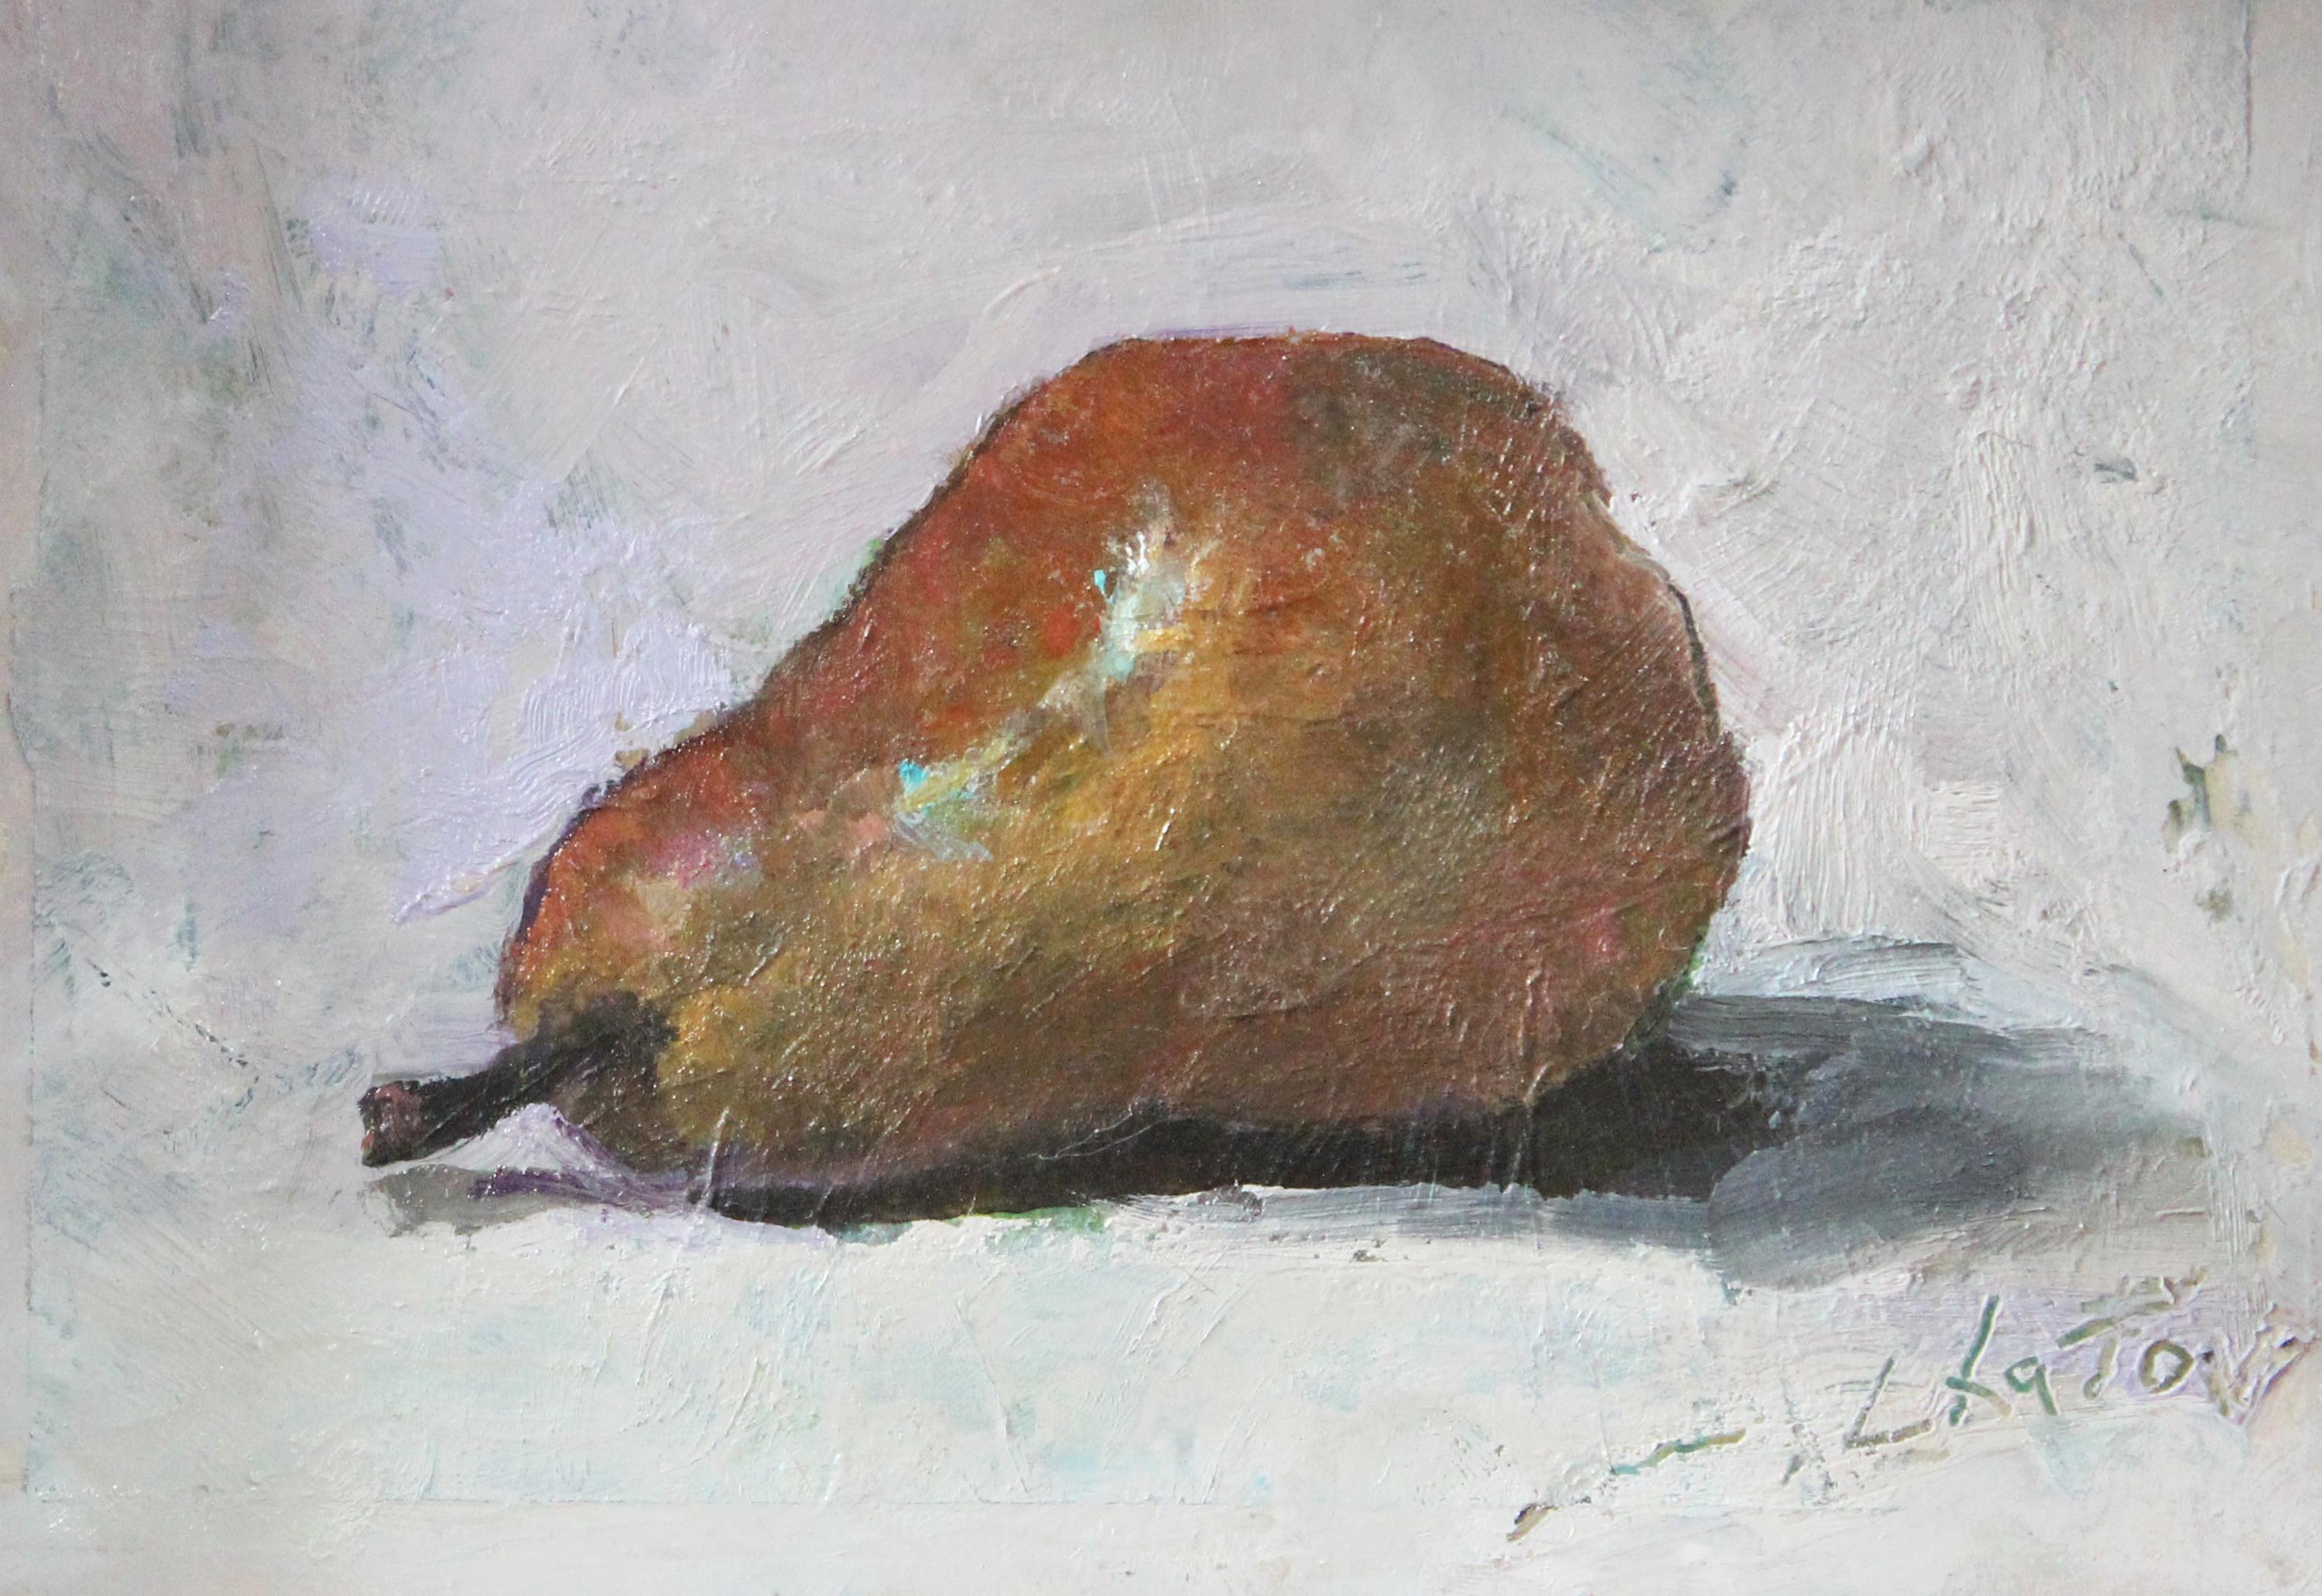 Marc Chatov Still-Life Painting - "Bartlett Pear" - Contemporary Realism - Still Life - Manet